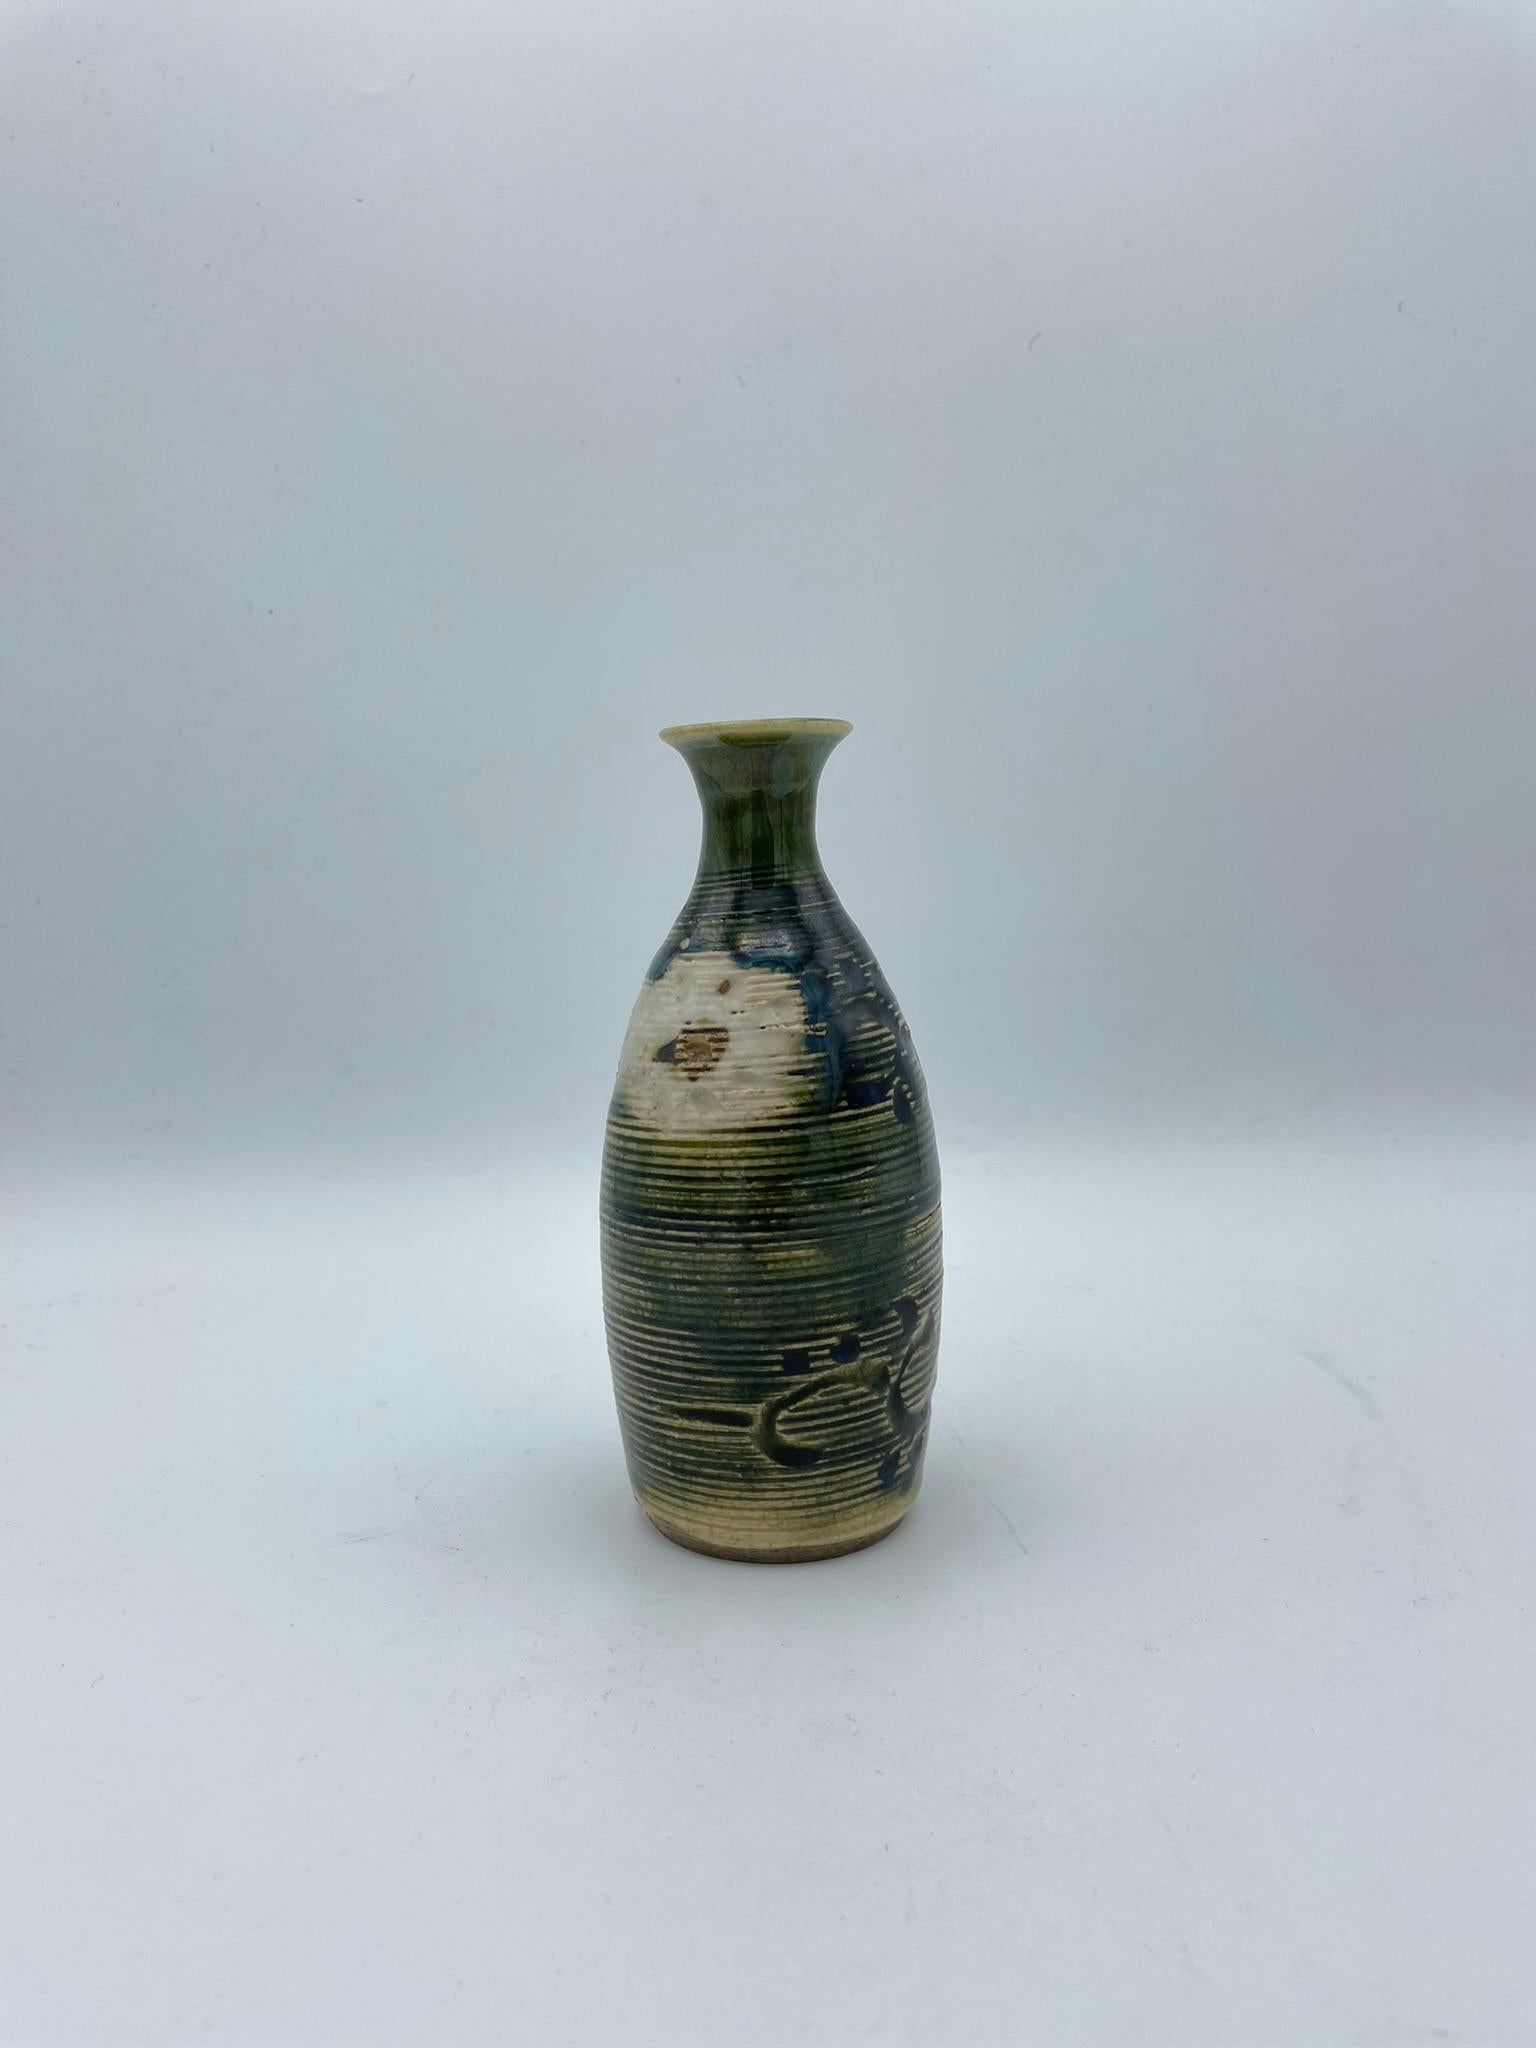 Dies ist eine Flasche für Sake, die auf Japanisch 'Tokkuri' heißt.
Diese Tokkuri wurde in der Meiji-Ära um 1900 hergestellt.
Es ist aus Porzellan und im Oribe-Stil (Oribe ware/ Oribe yaki) gefertigt.

Der japanische Keramikstil 